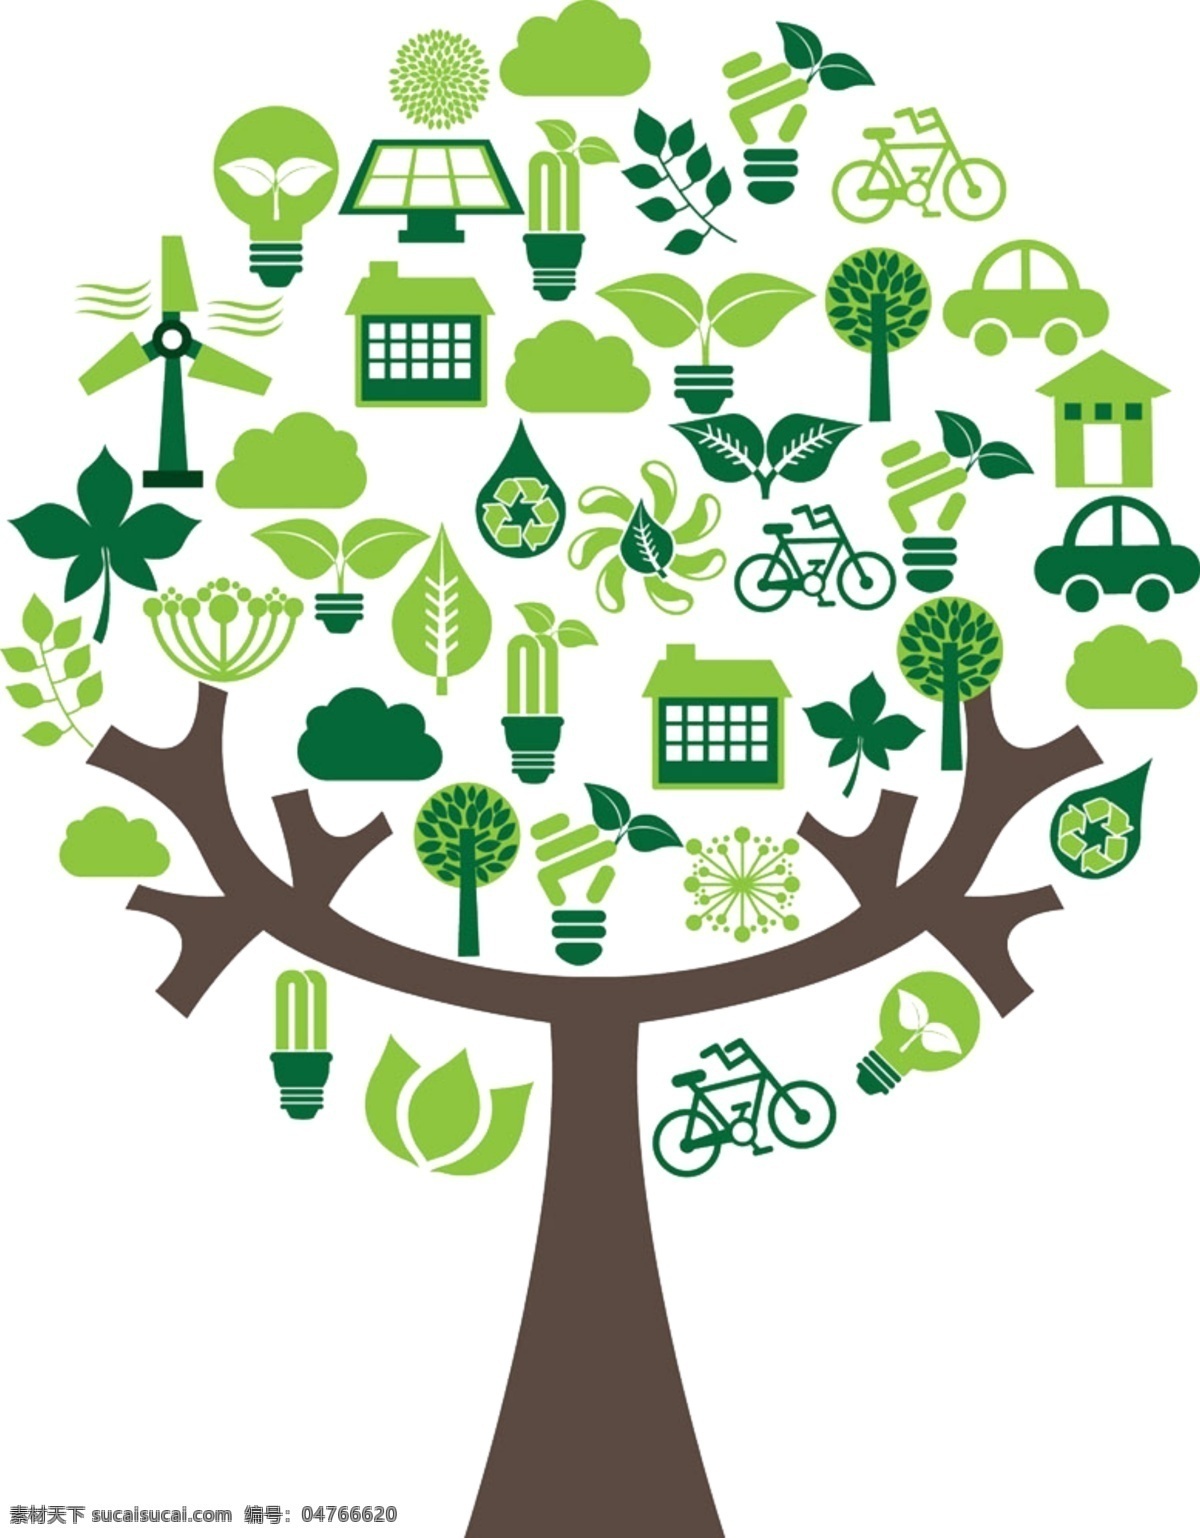 绿色环保 环保 绿树 大树 绿色大树 环保树 环保回收资源 资源 树 灯泡 自行车 电池 汽车 废物利用 回收利用 再生资源 再生 分层